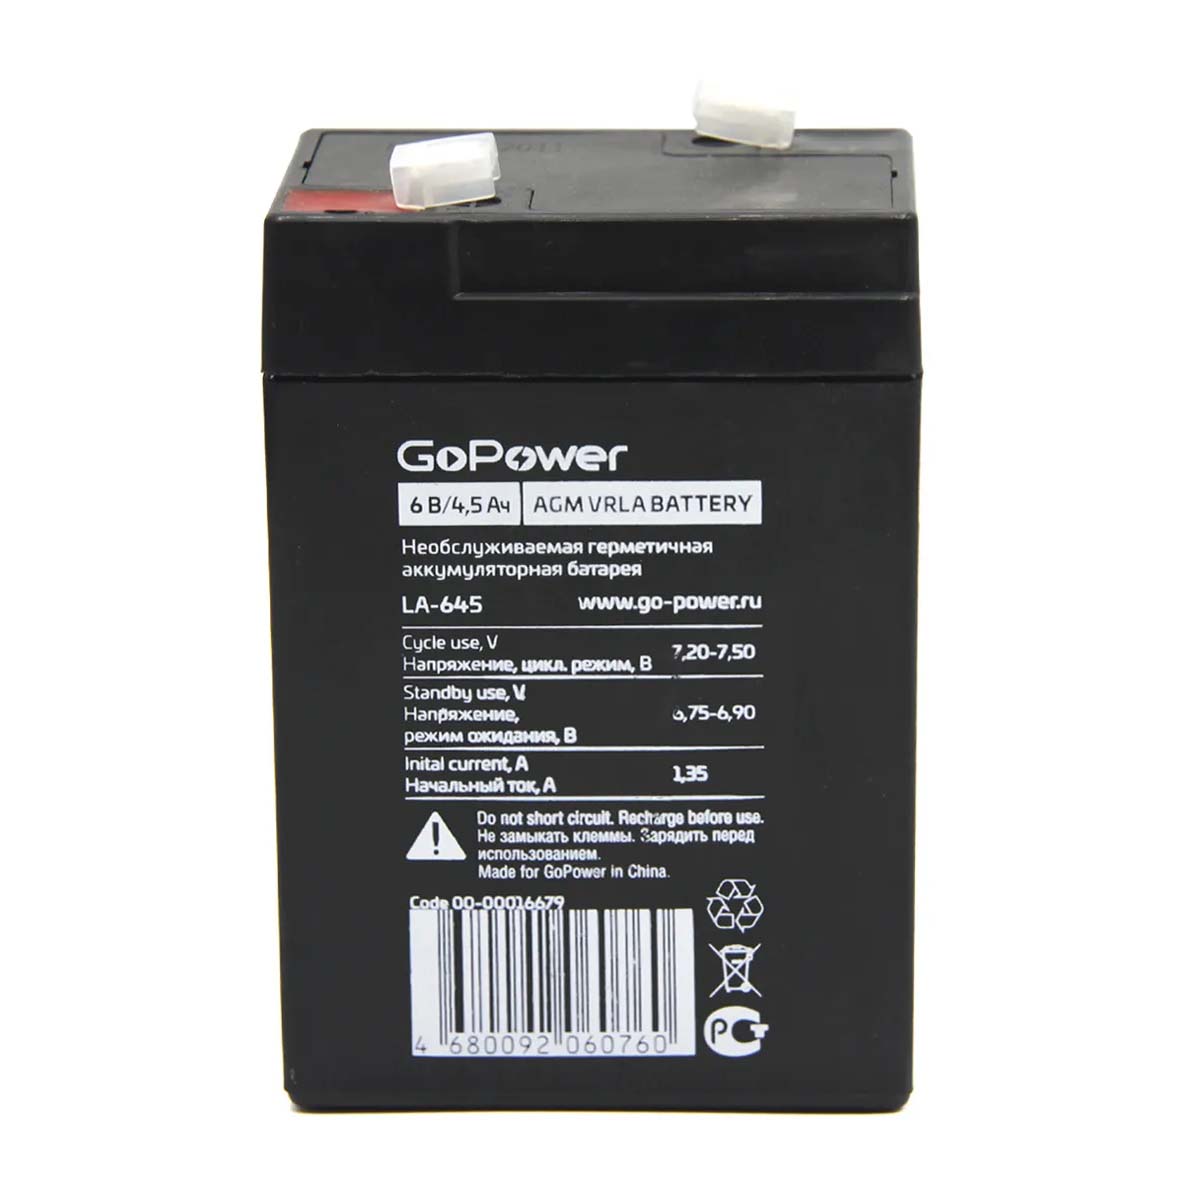 Аккумулятор свинцово-кислотный GoPower LA-645 6V 4.5Ah, цвет черный